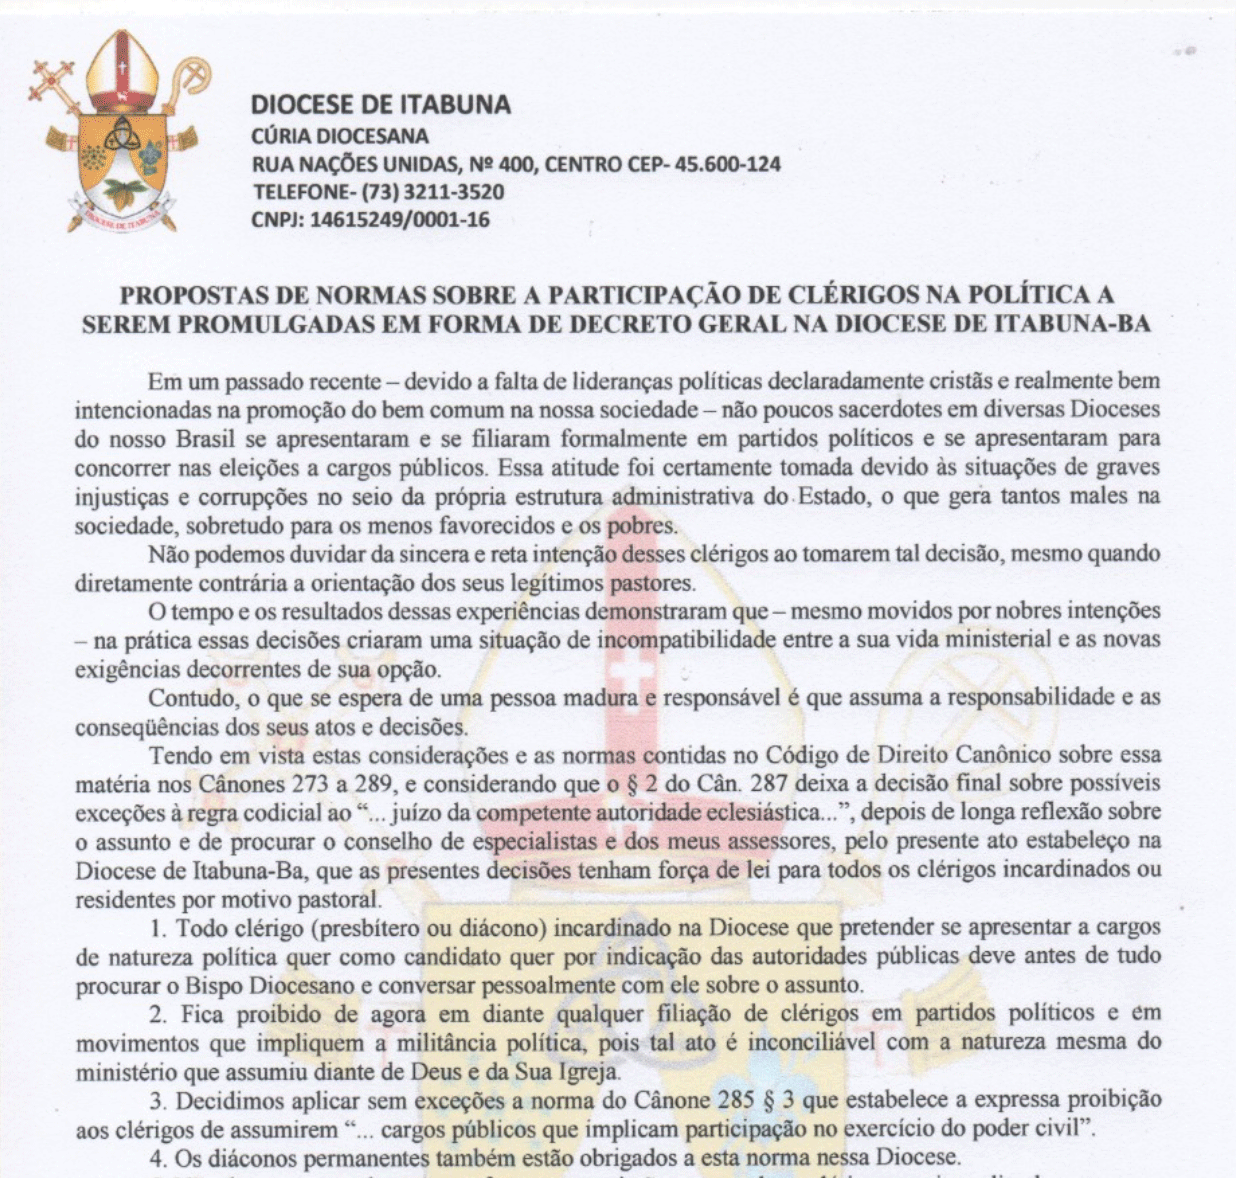 Decreto geral na Diocese de Itabuna sobre a participação de clérigos na política